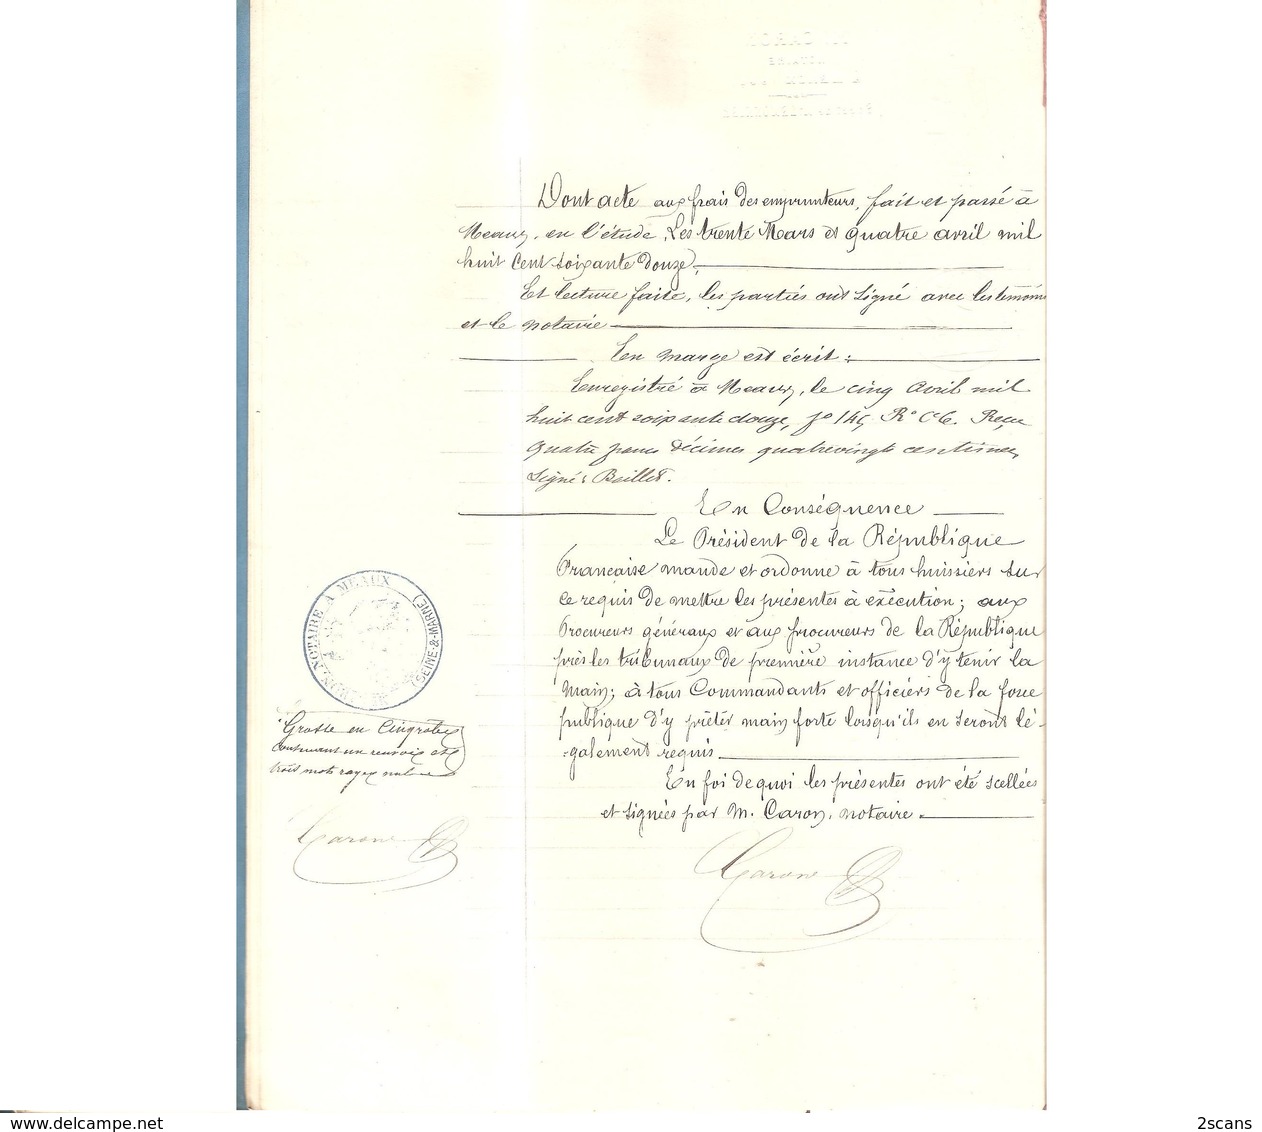 77 - VILLENOY - 1872 - Obligation par M. & Mme CHEVREMONT à Mme Vve VIENNOT (née DROUILLY) - Meaux Neufmontiers Penchard